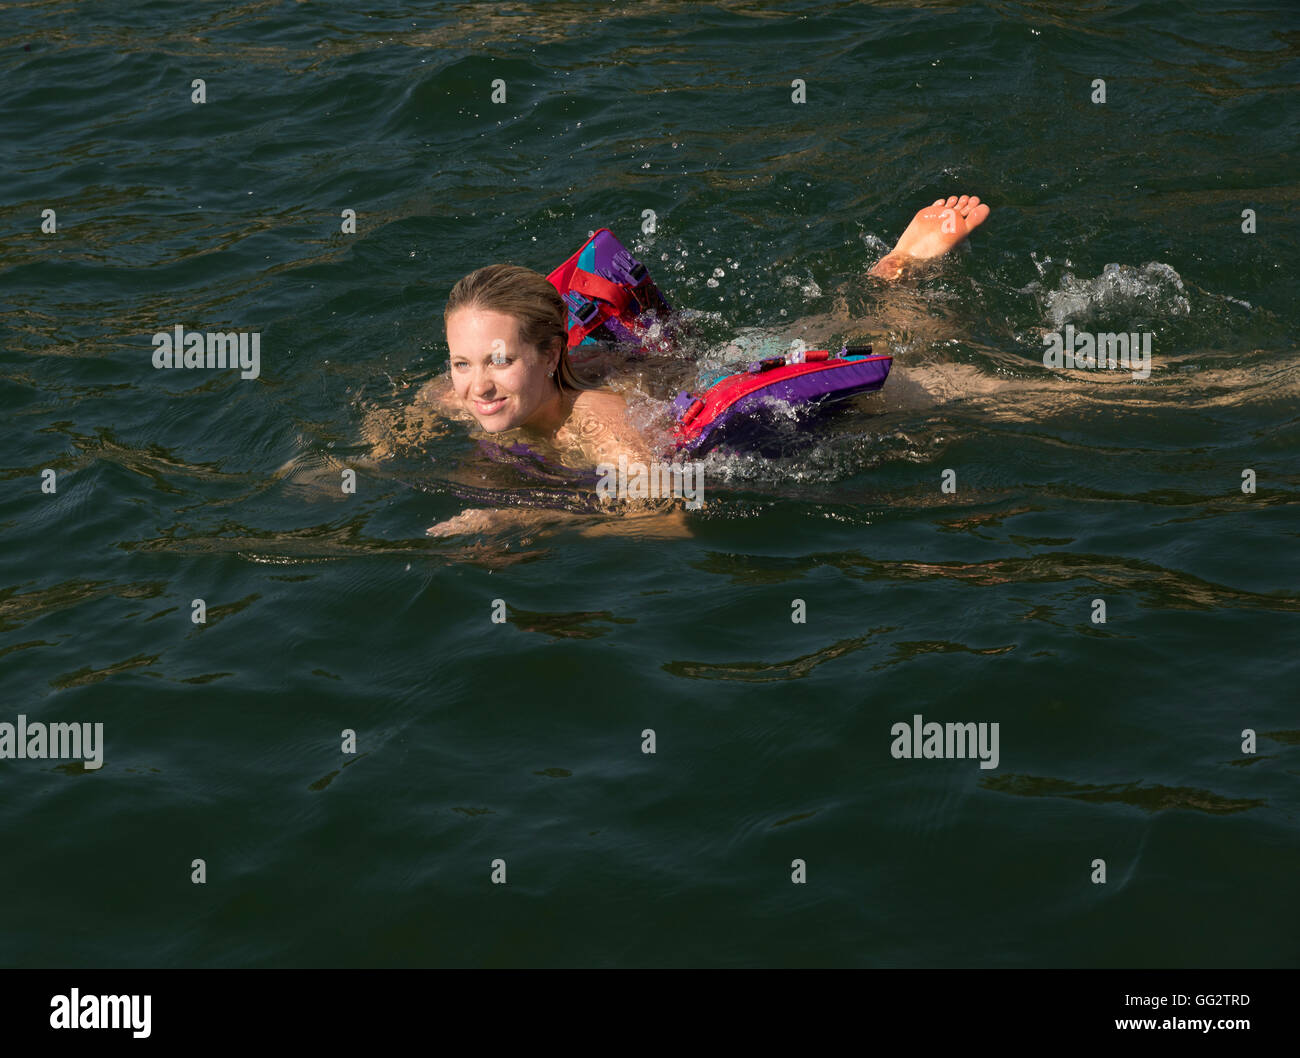 A fun-loving 20's woman swims in a lake. Stock Photo